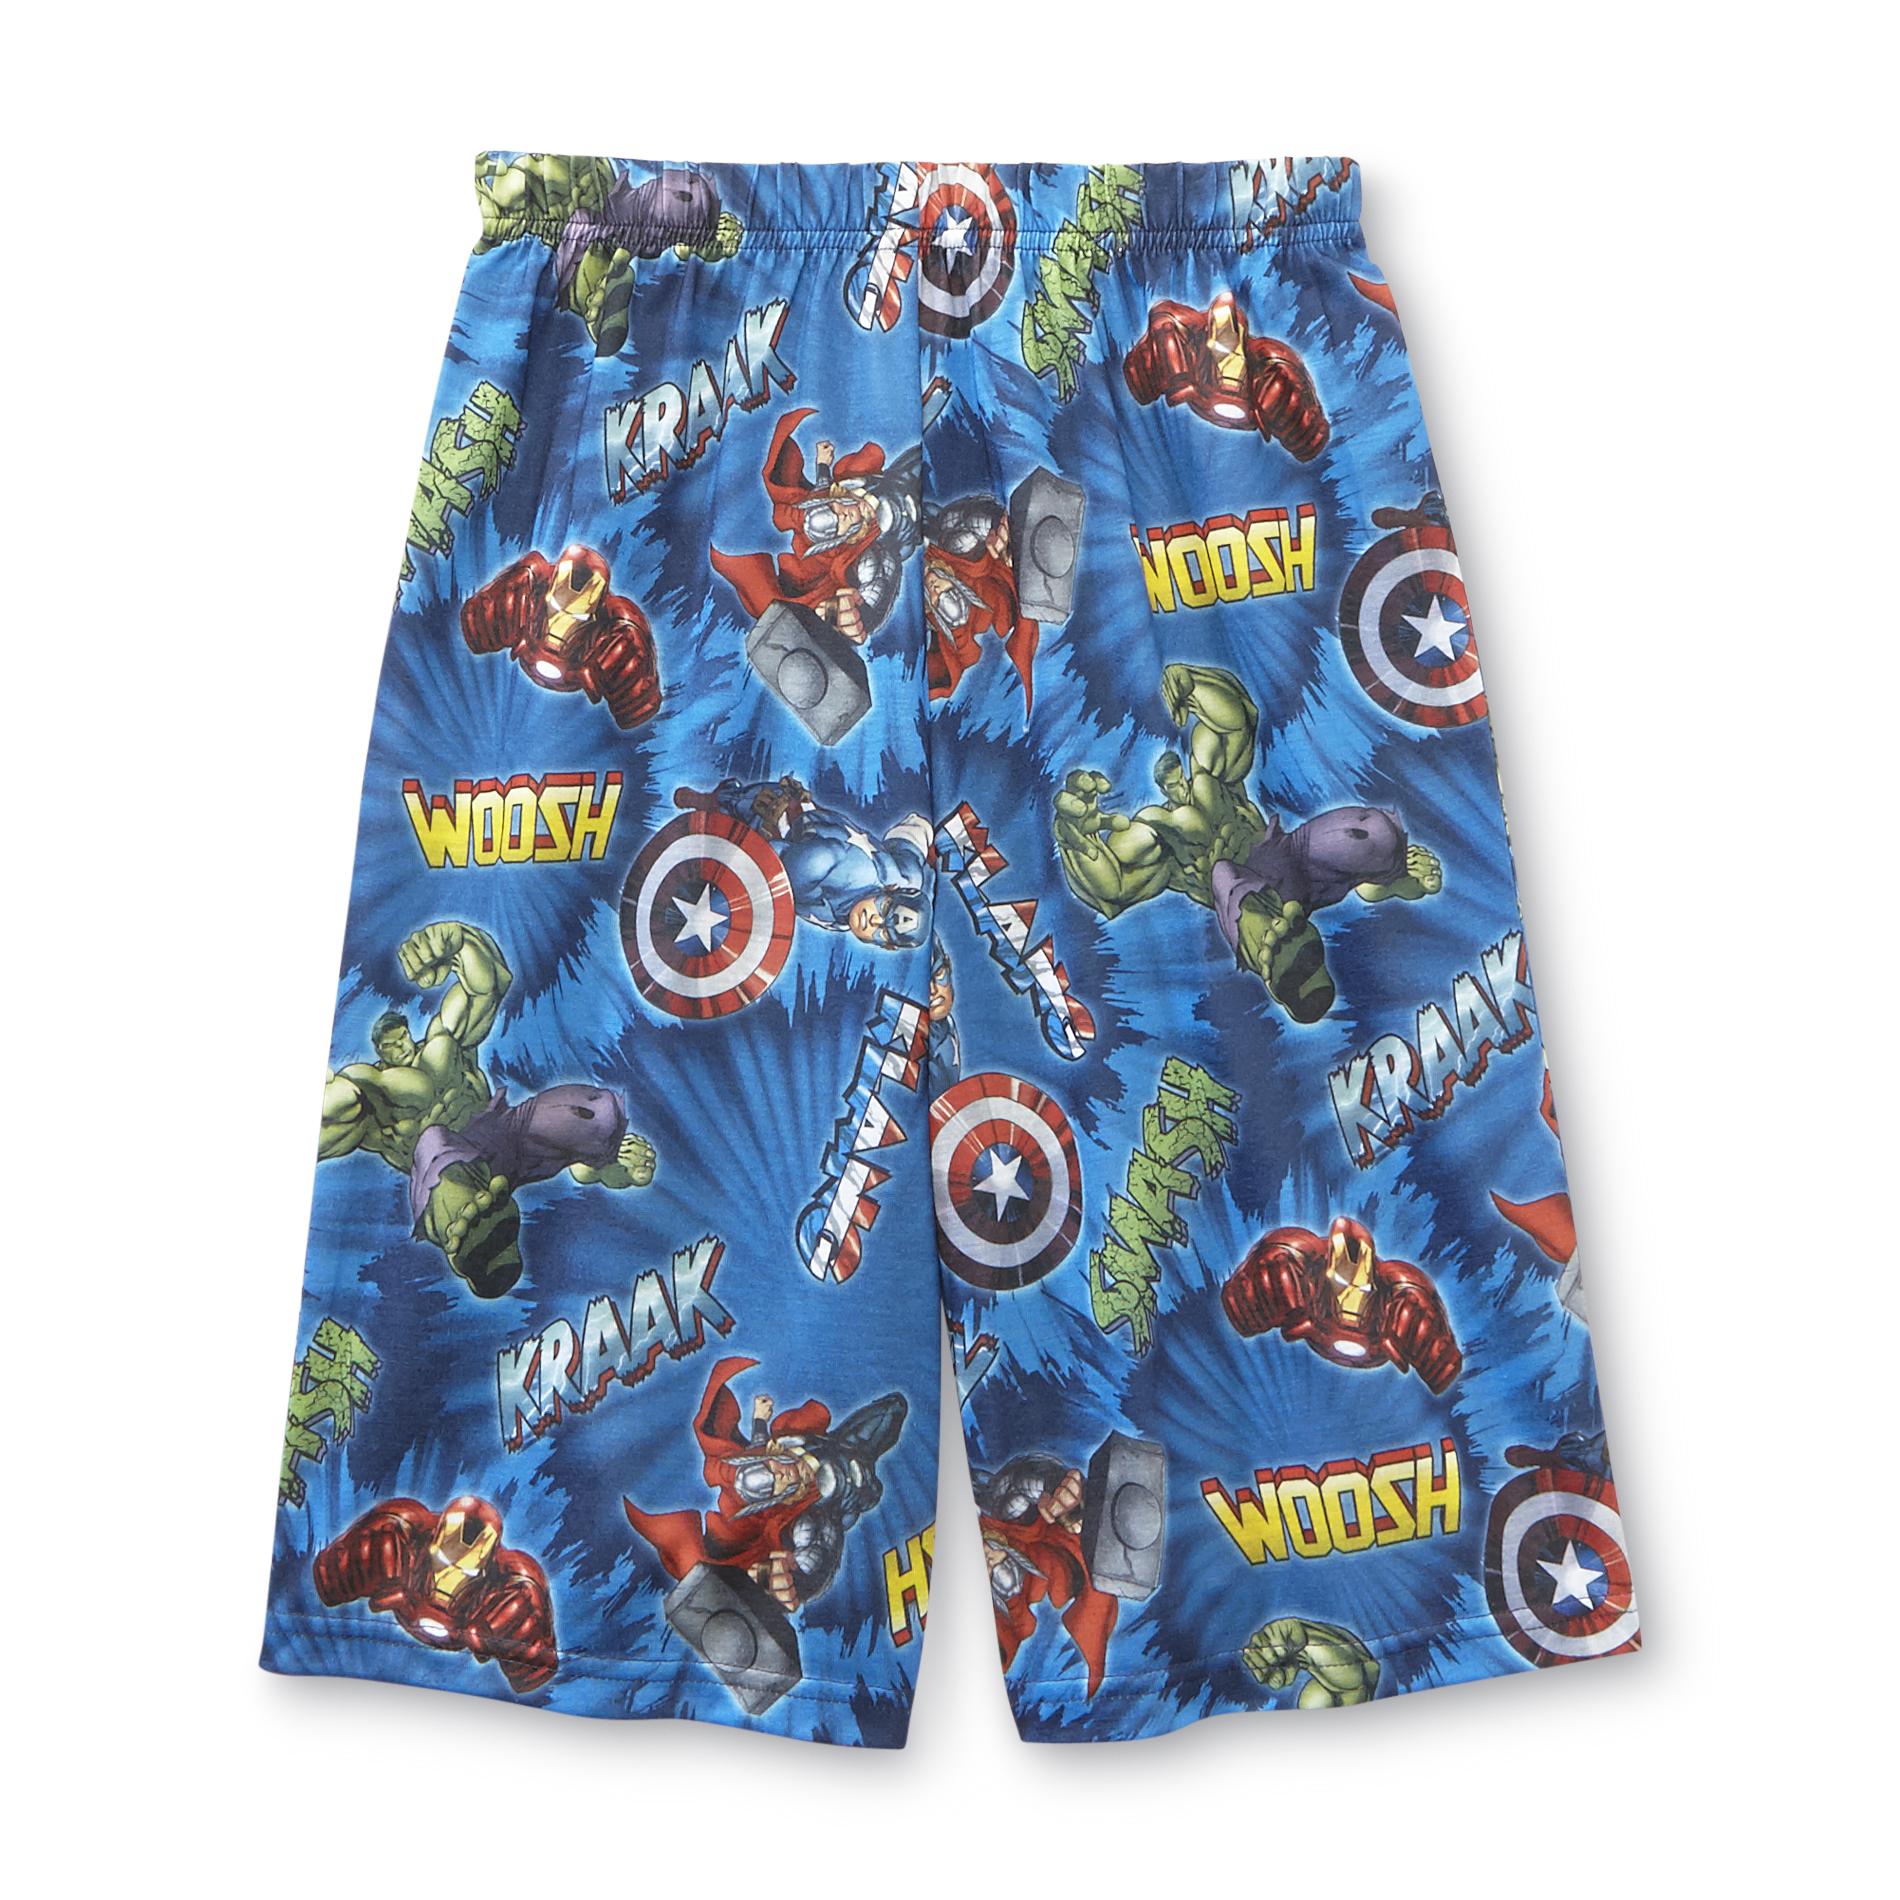 Marvel Avengers Assemble Boy's Pajama Shorts